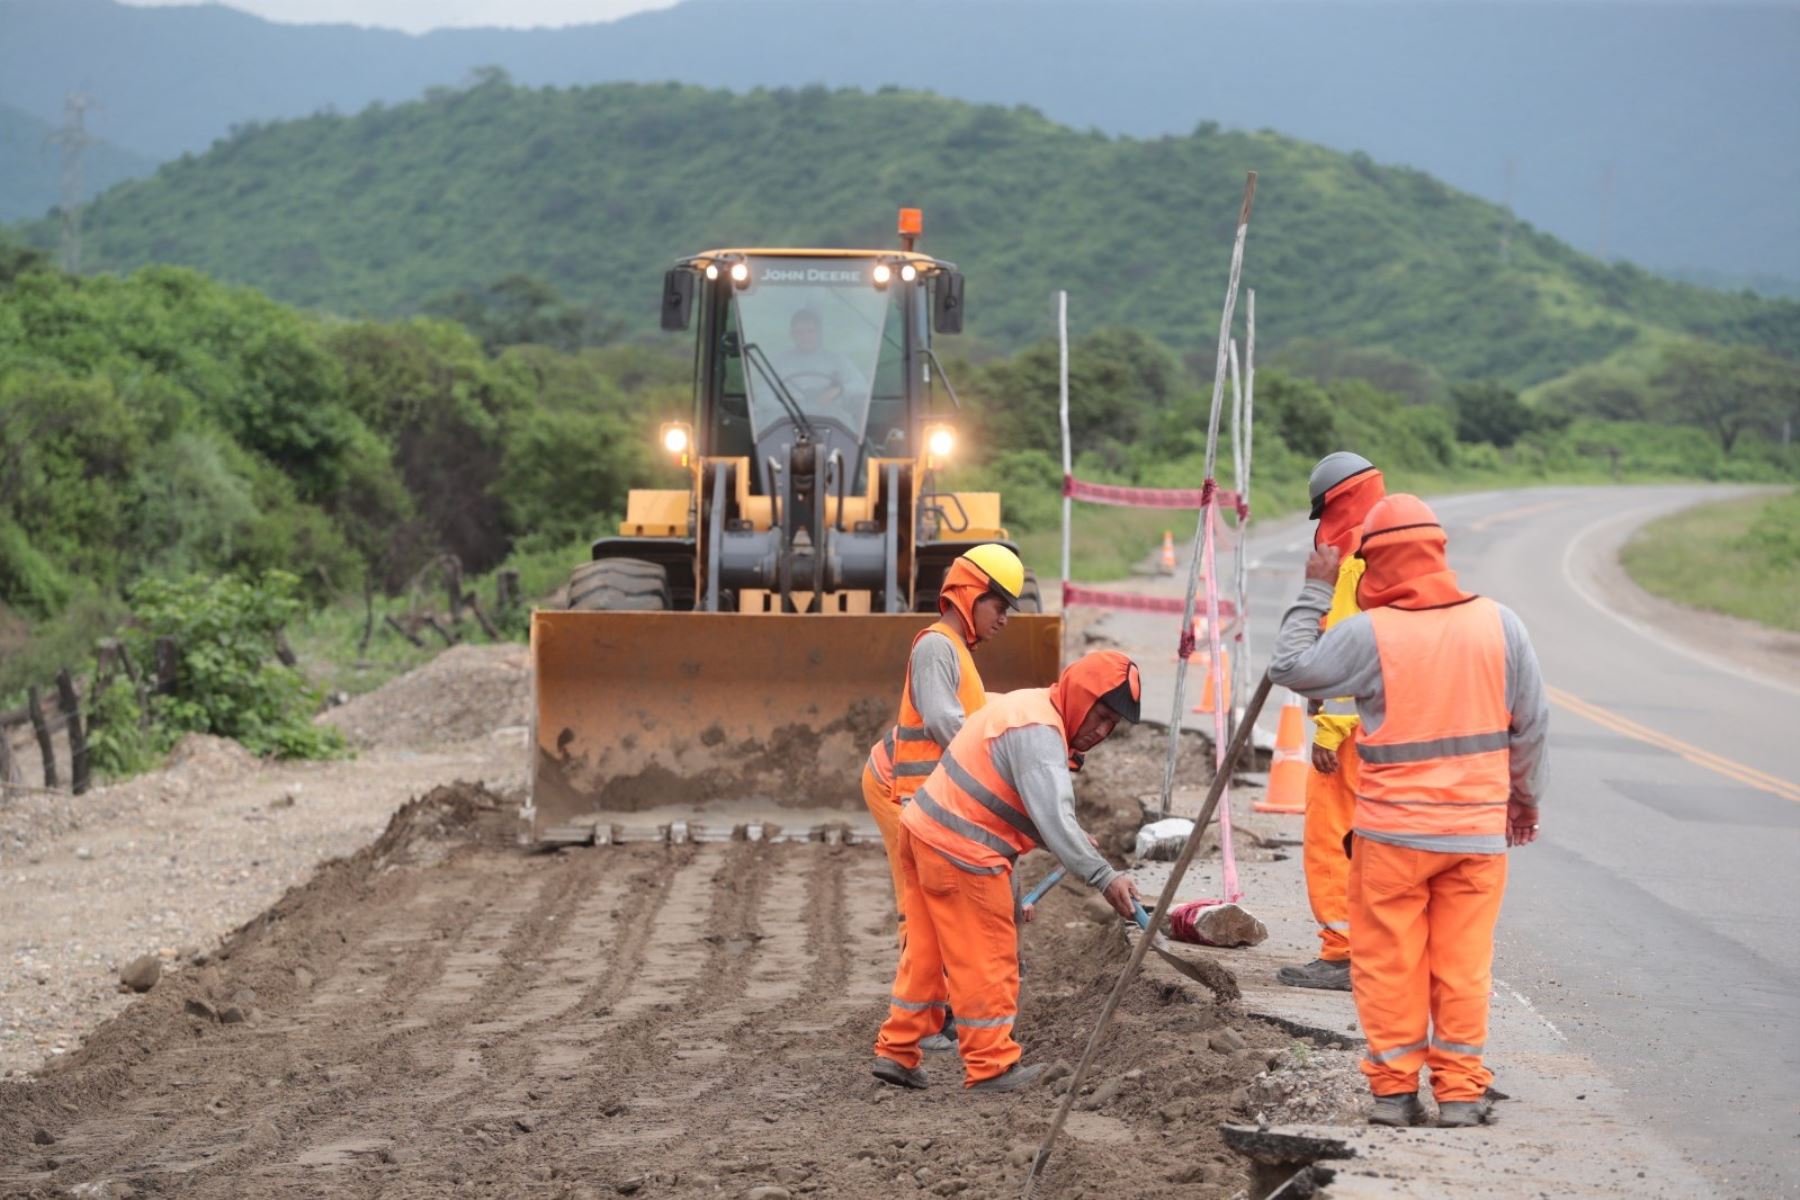 El ministro Raúl Pérez Reyes aseguró que el MTC tendrá a disposición la maquinaria pesada que haga falta para enfrentar los impactos de El Niño. Foto: ANDINA/Difusión